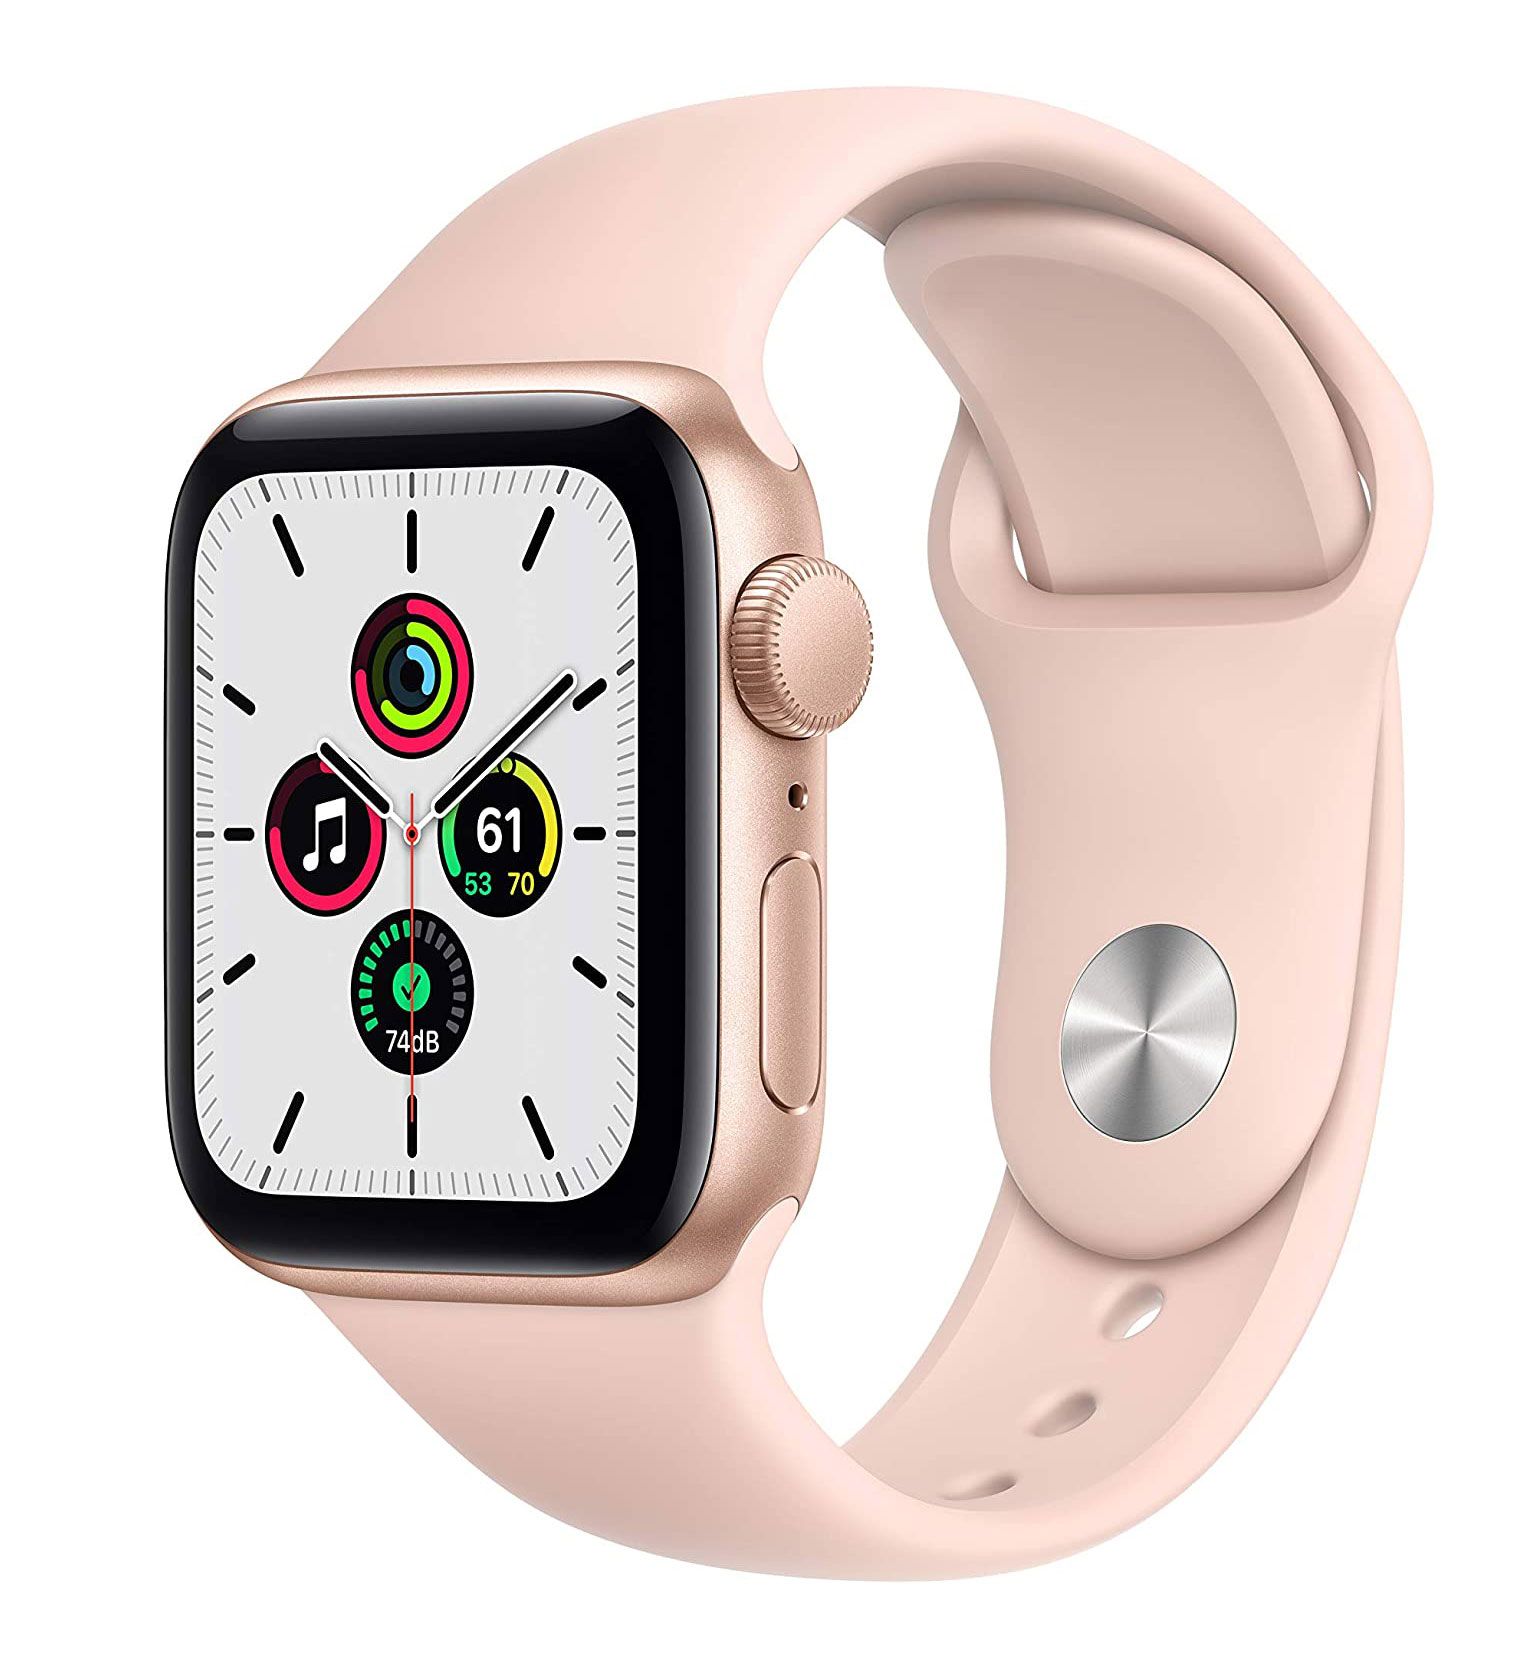 Լավագույն նվերներ, նվերների գաղափարներ կանանց համար - Apple Watch SE